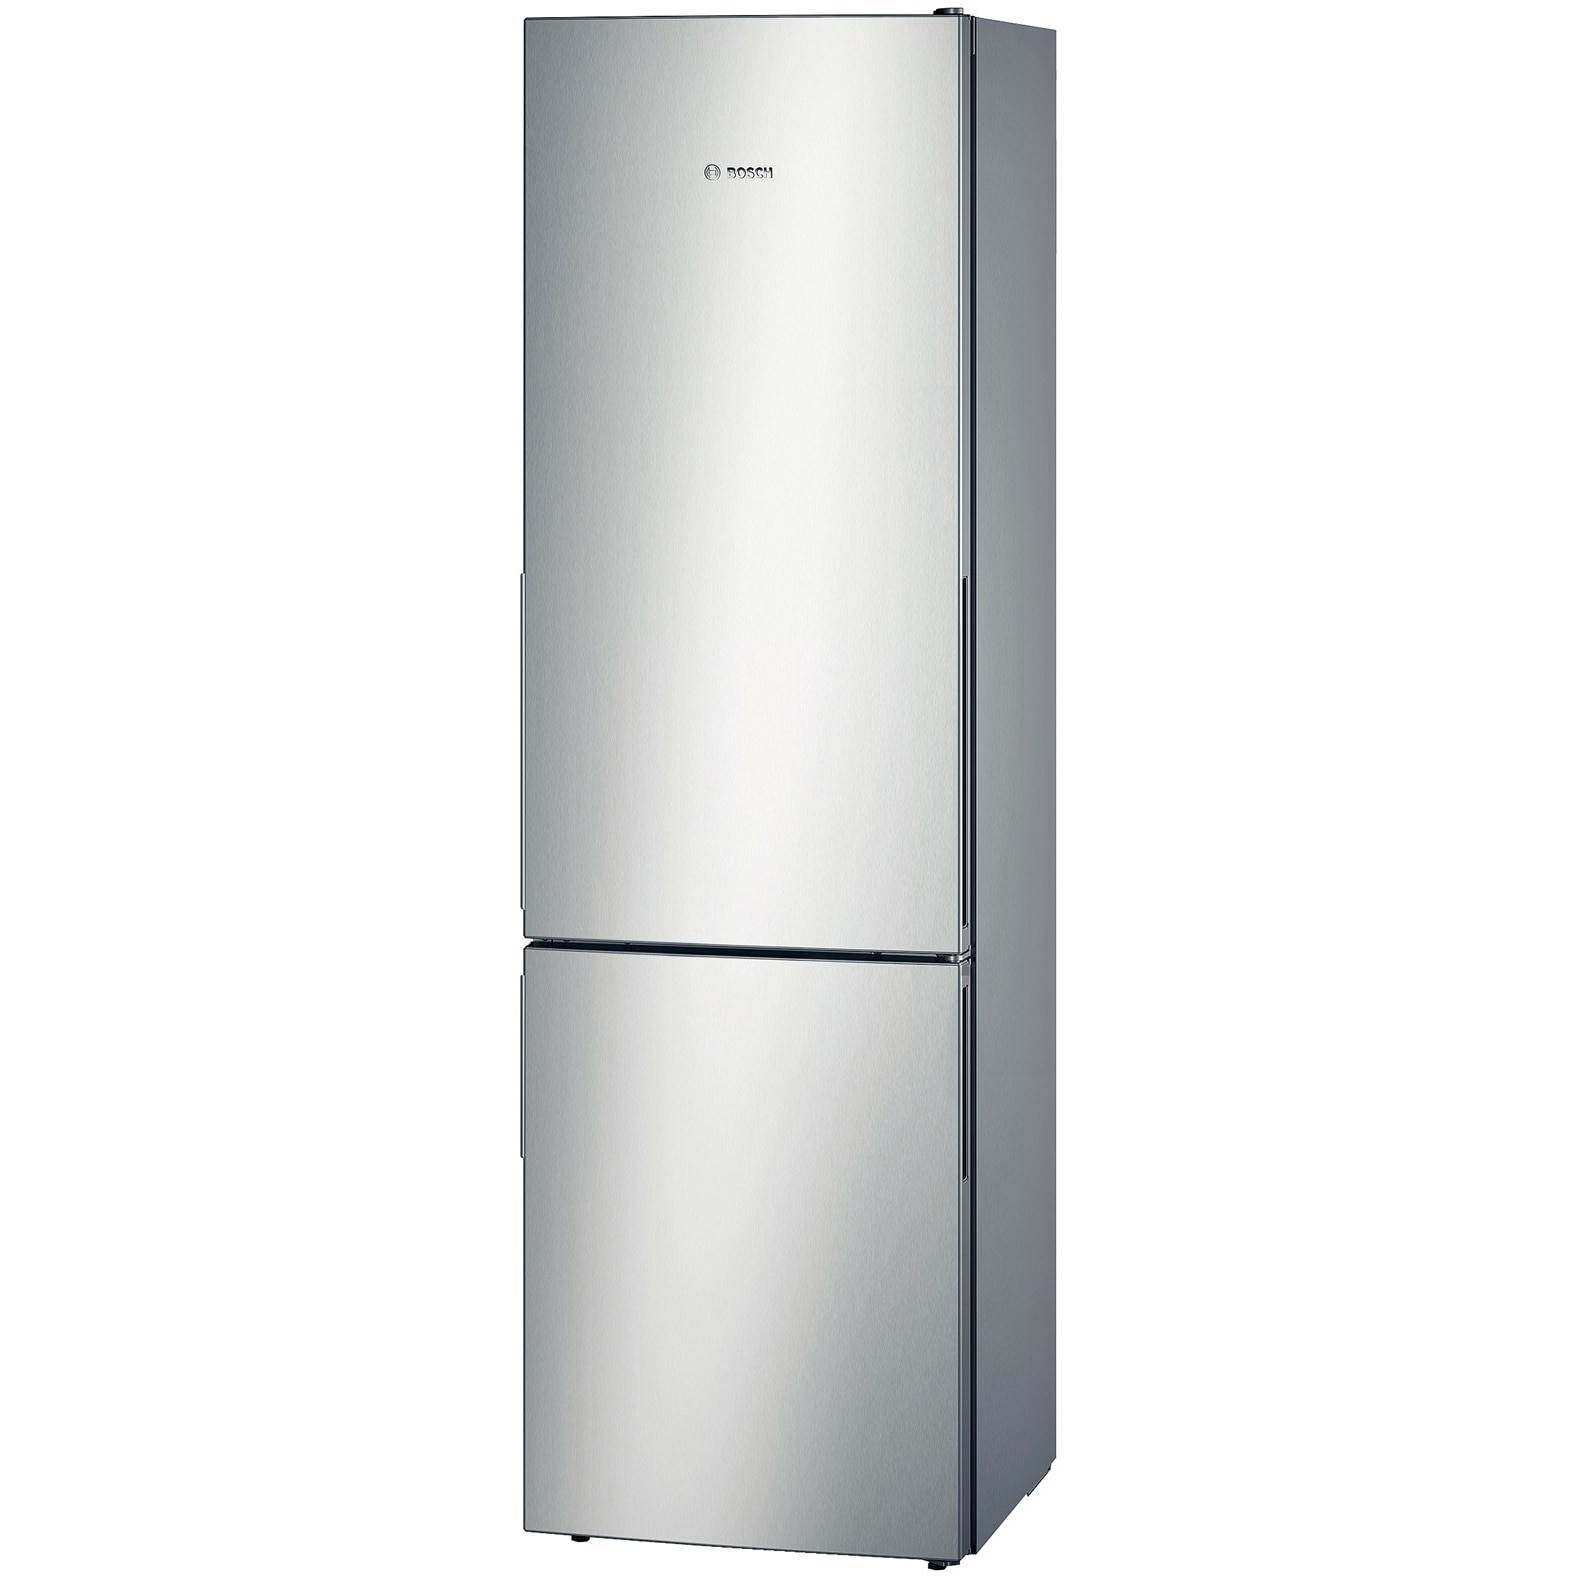 Хладилник Bosch KGE39BL41 с обем от 339 л.